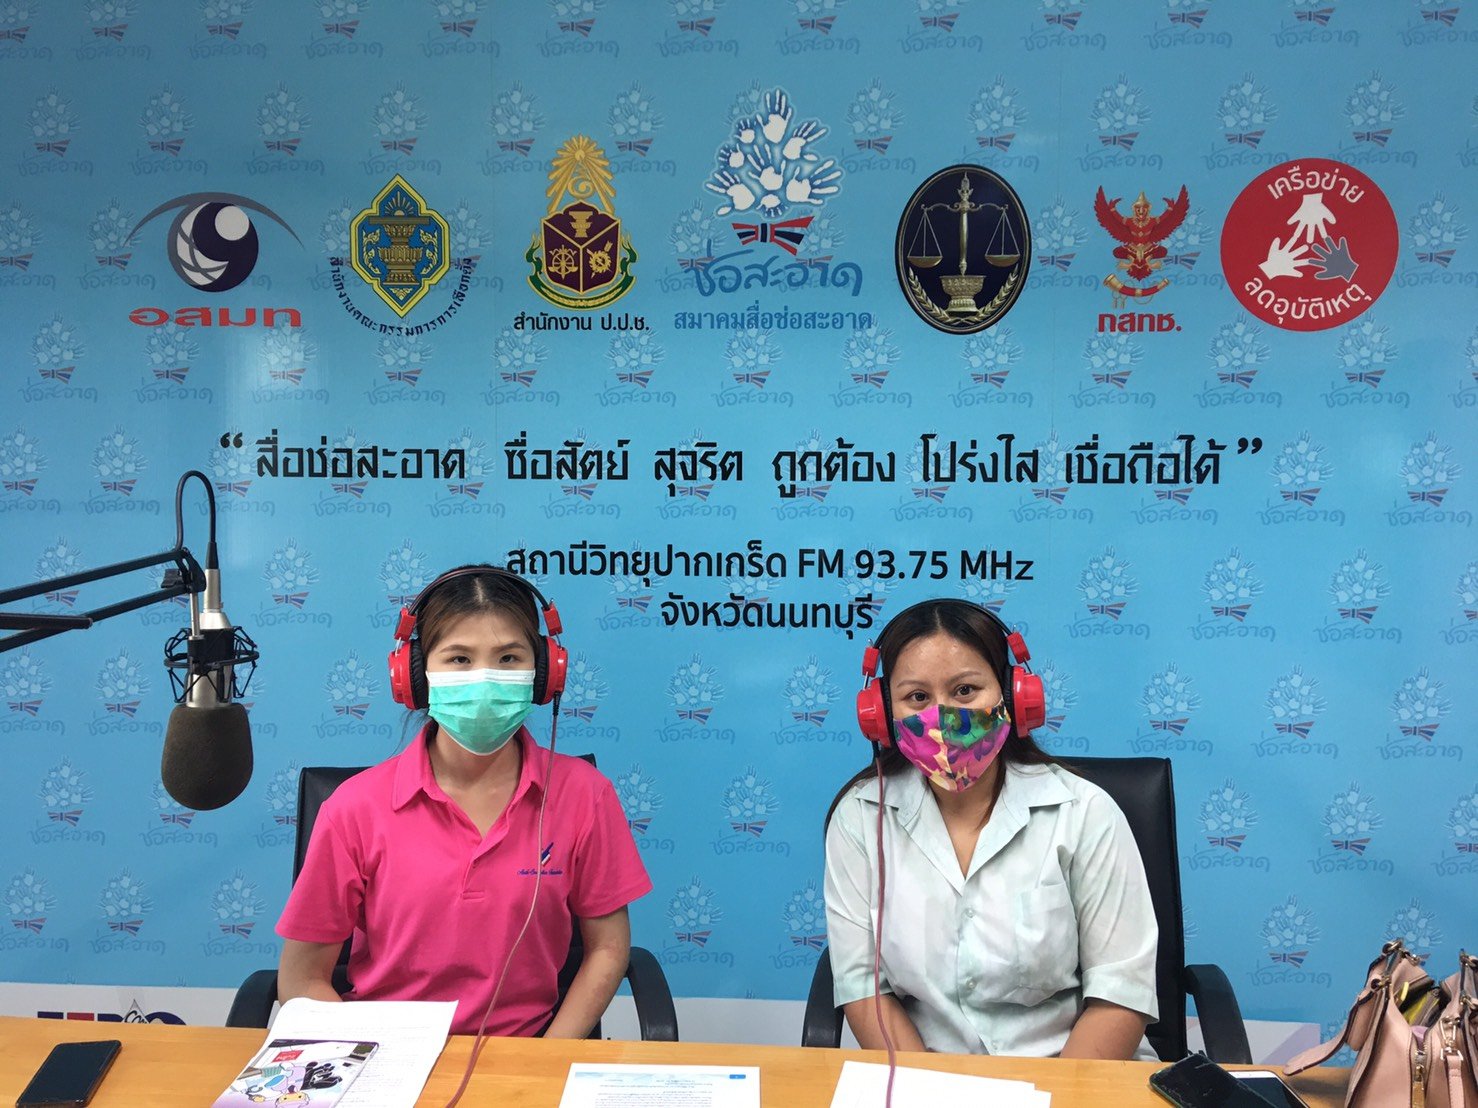 รายการ “คนไทยไม่ทนต่อการทุจริต” วันเสาร์ที่ 10 เมษายน 2564 เวลา 18.30-19.00 น.